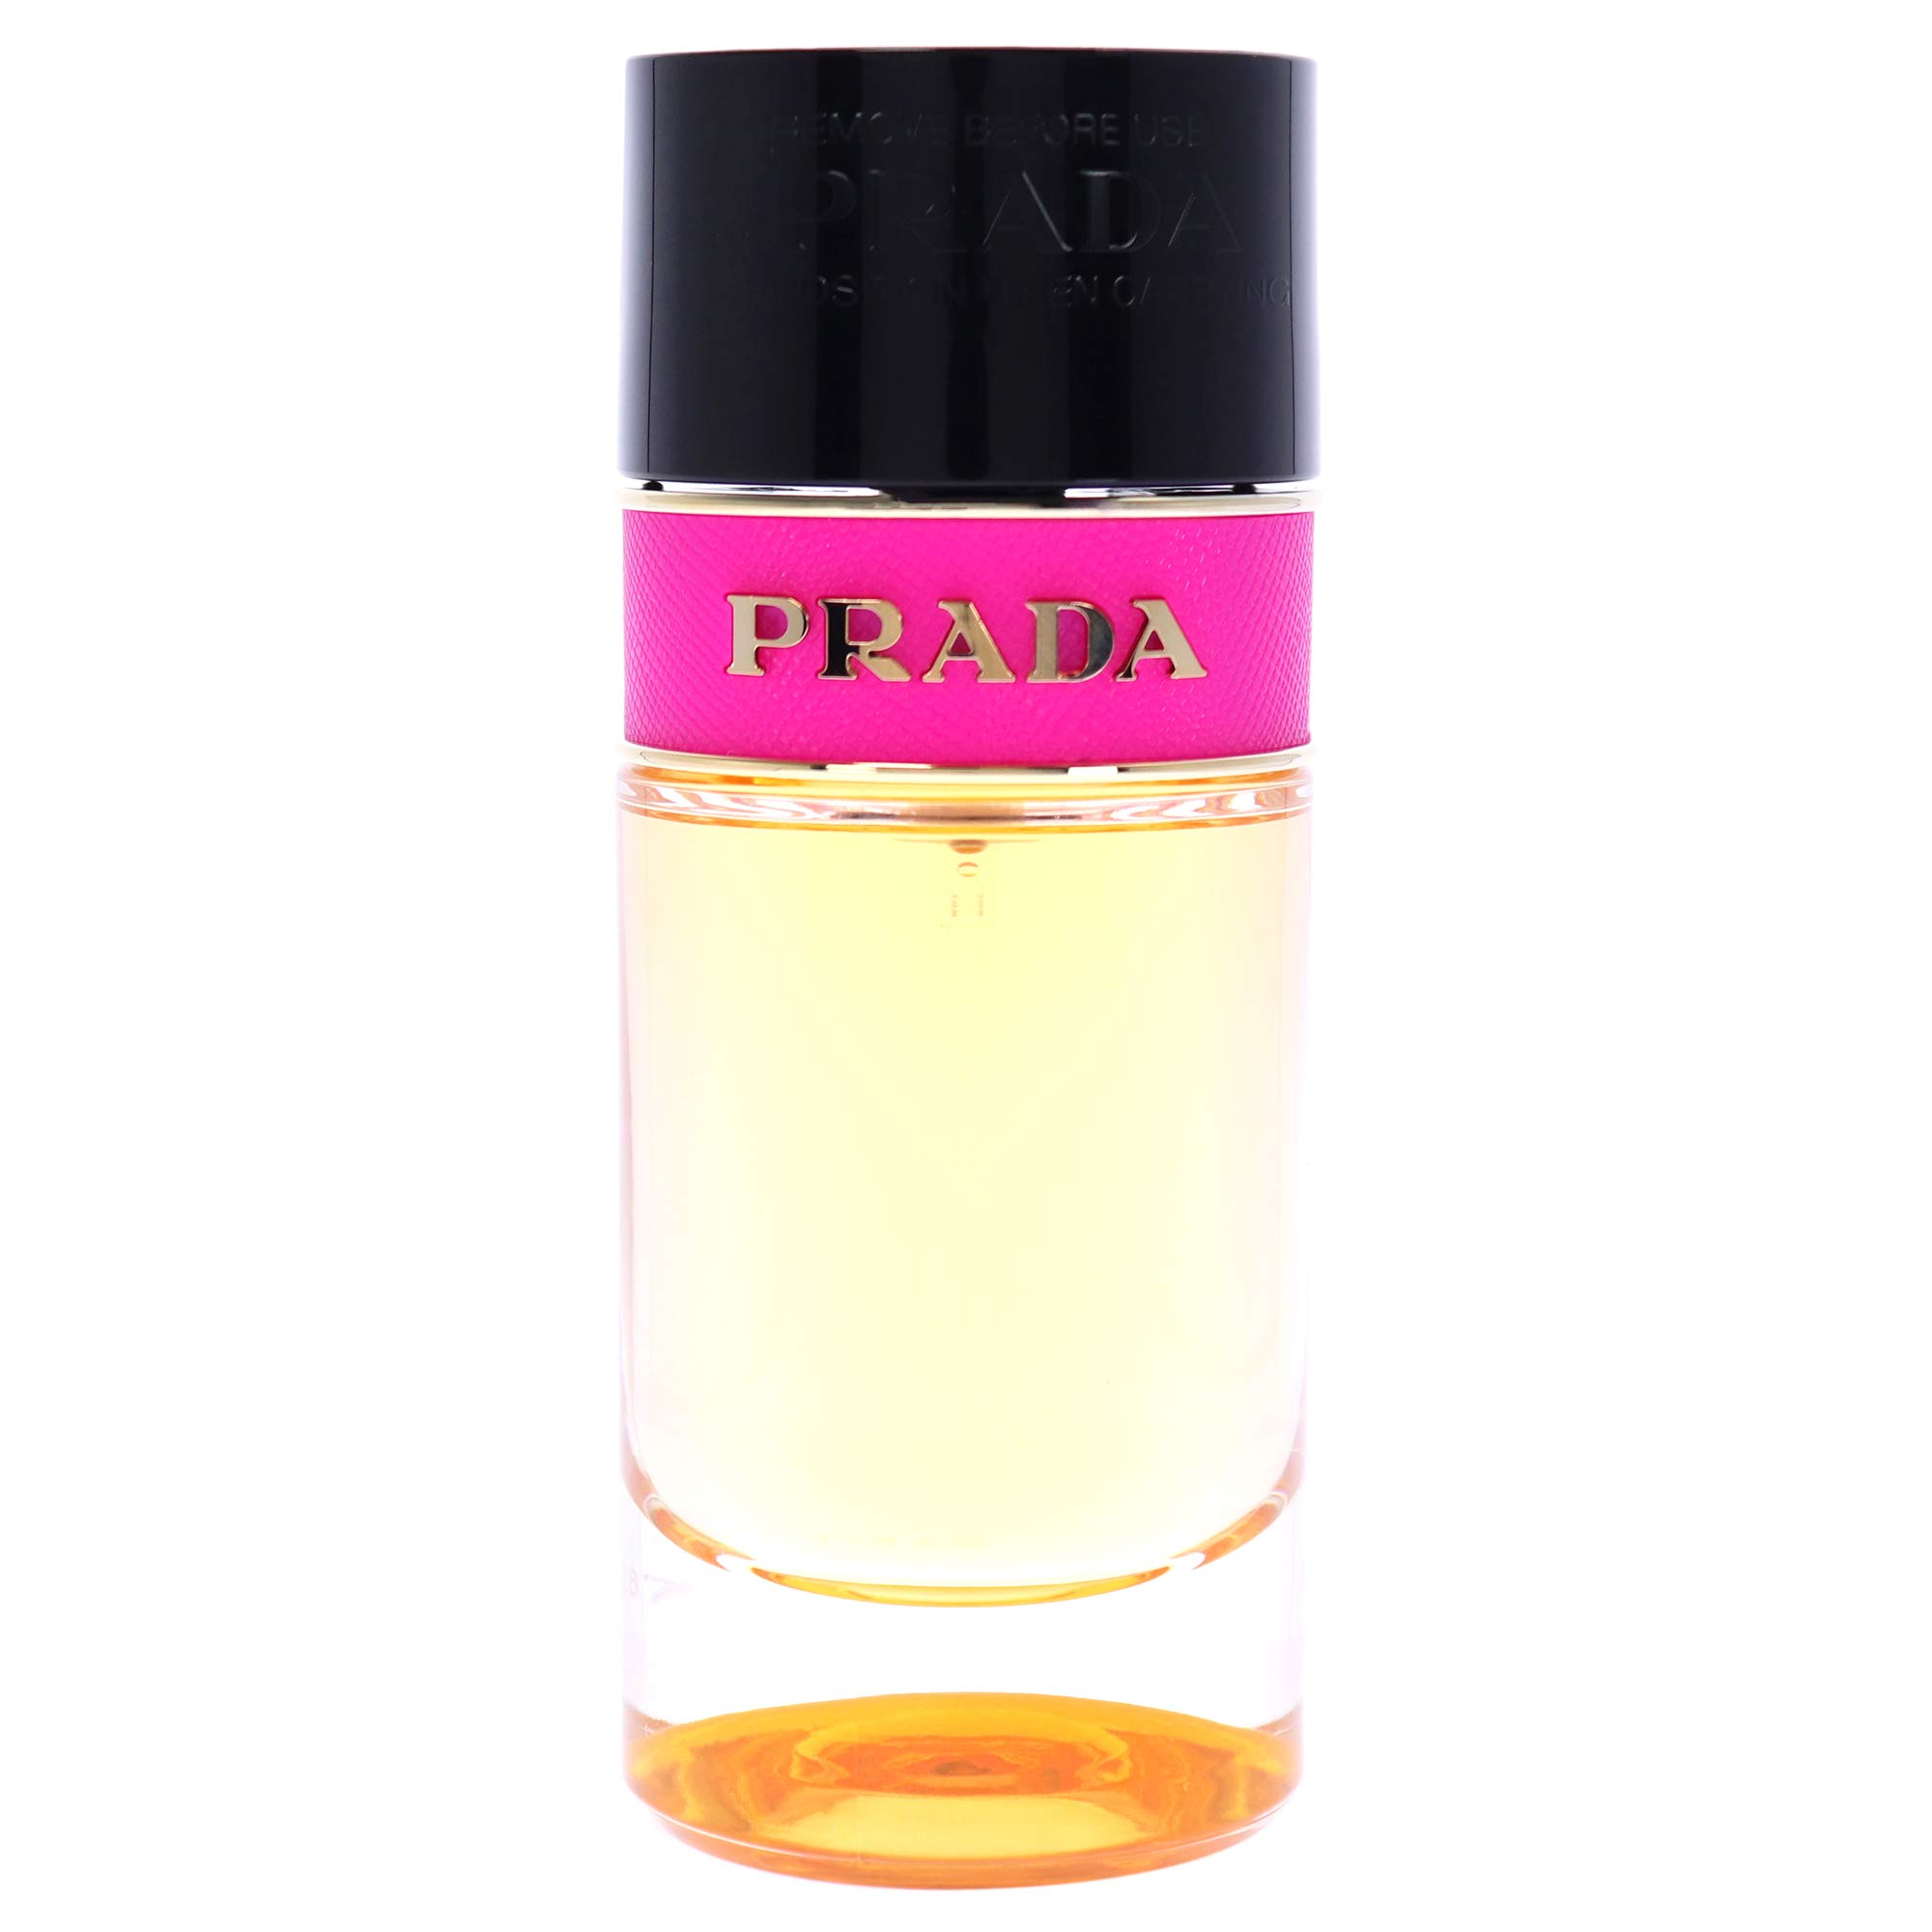 Prada Candy by Prada for Women 1.7 oz Eau de Parfum Spray